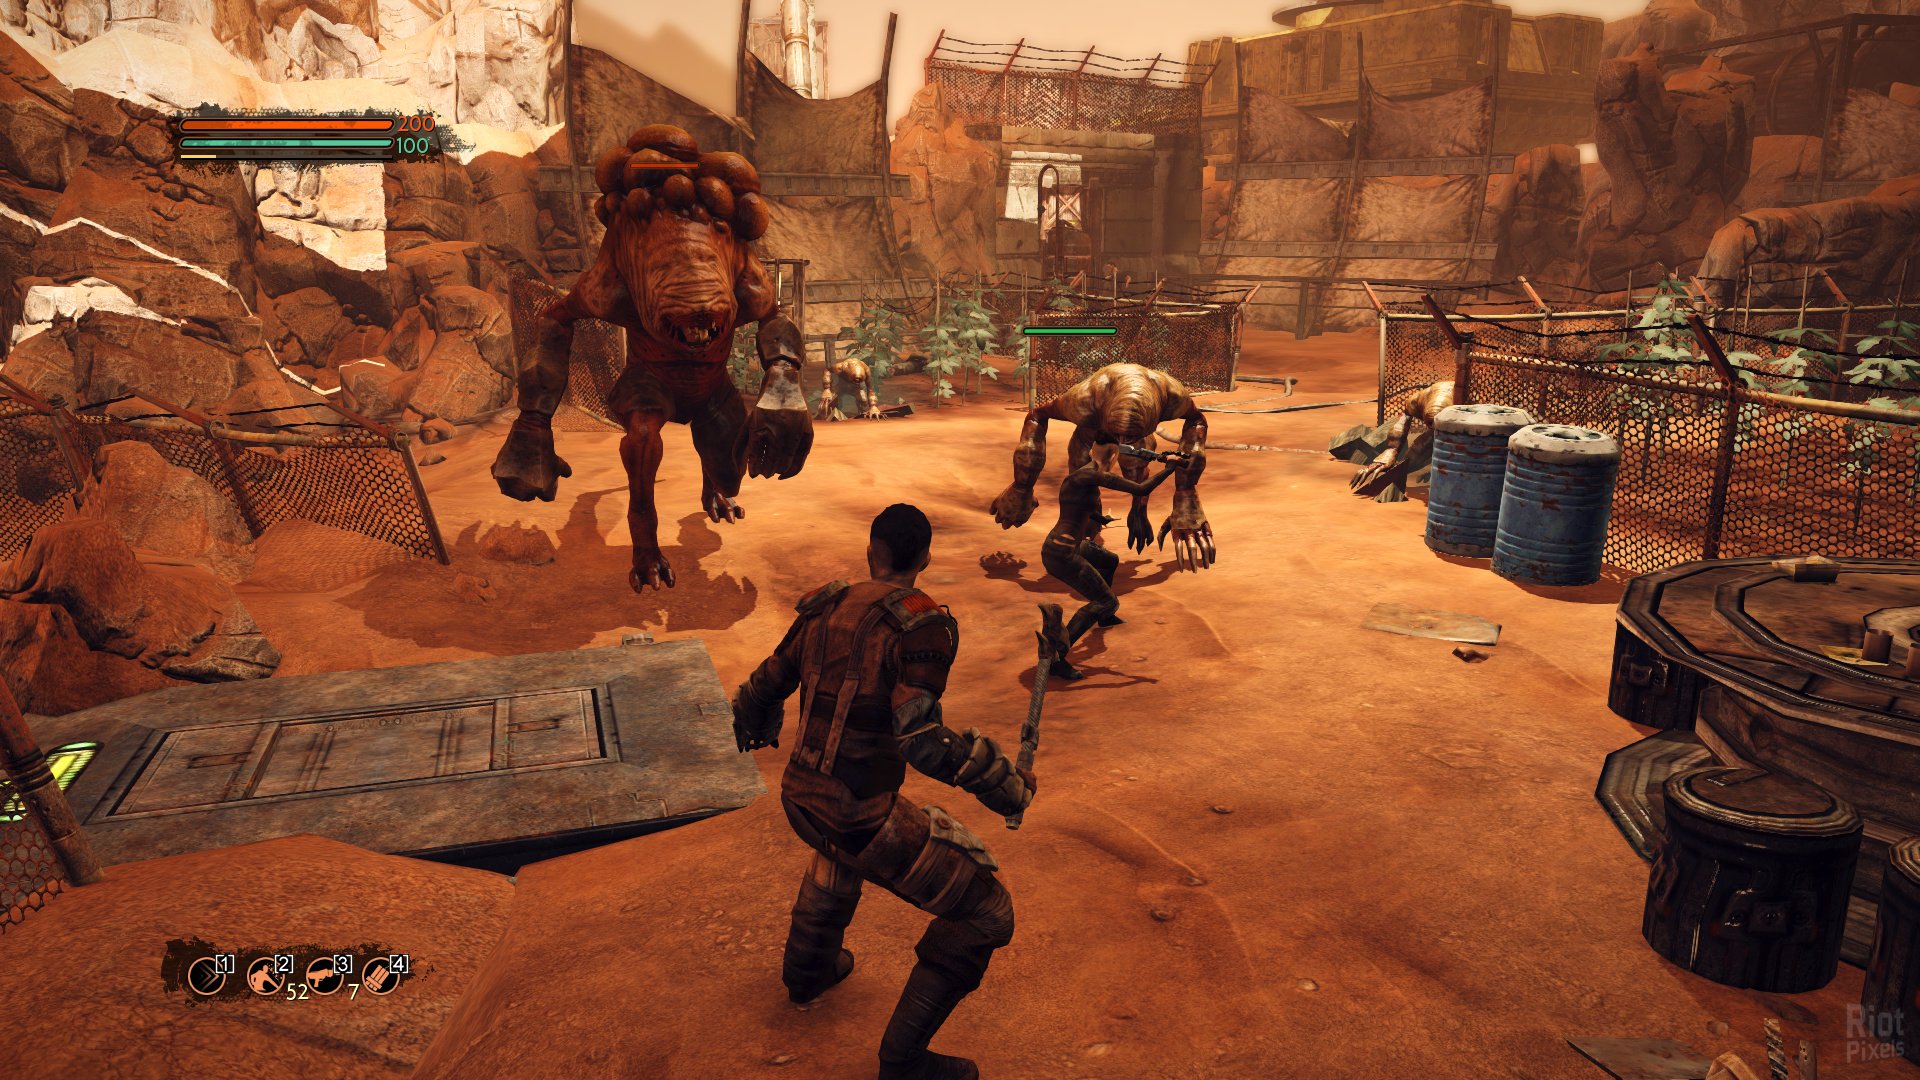 Скриншот 1 к игре Mars: War Logs v.1.0.1736 [GOG] (2013) PC | Лицензия